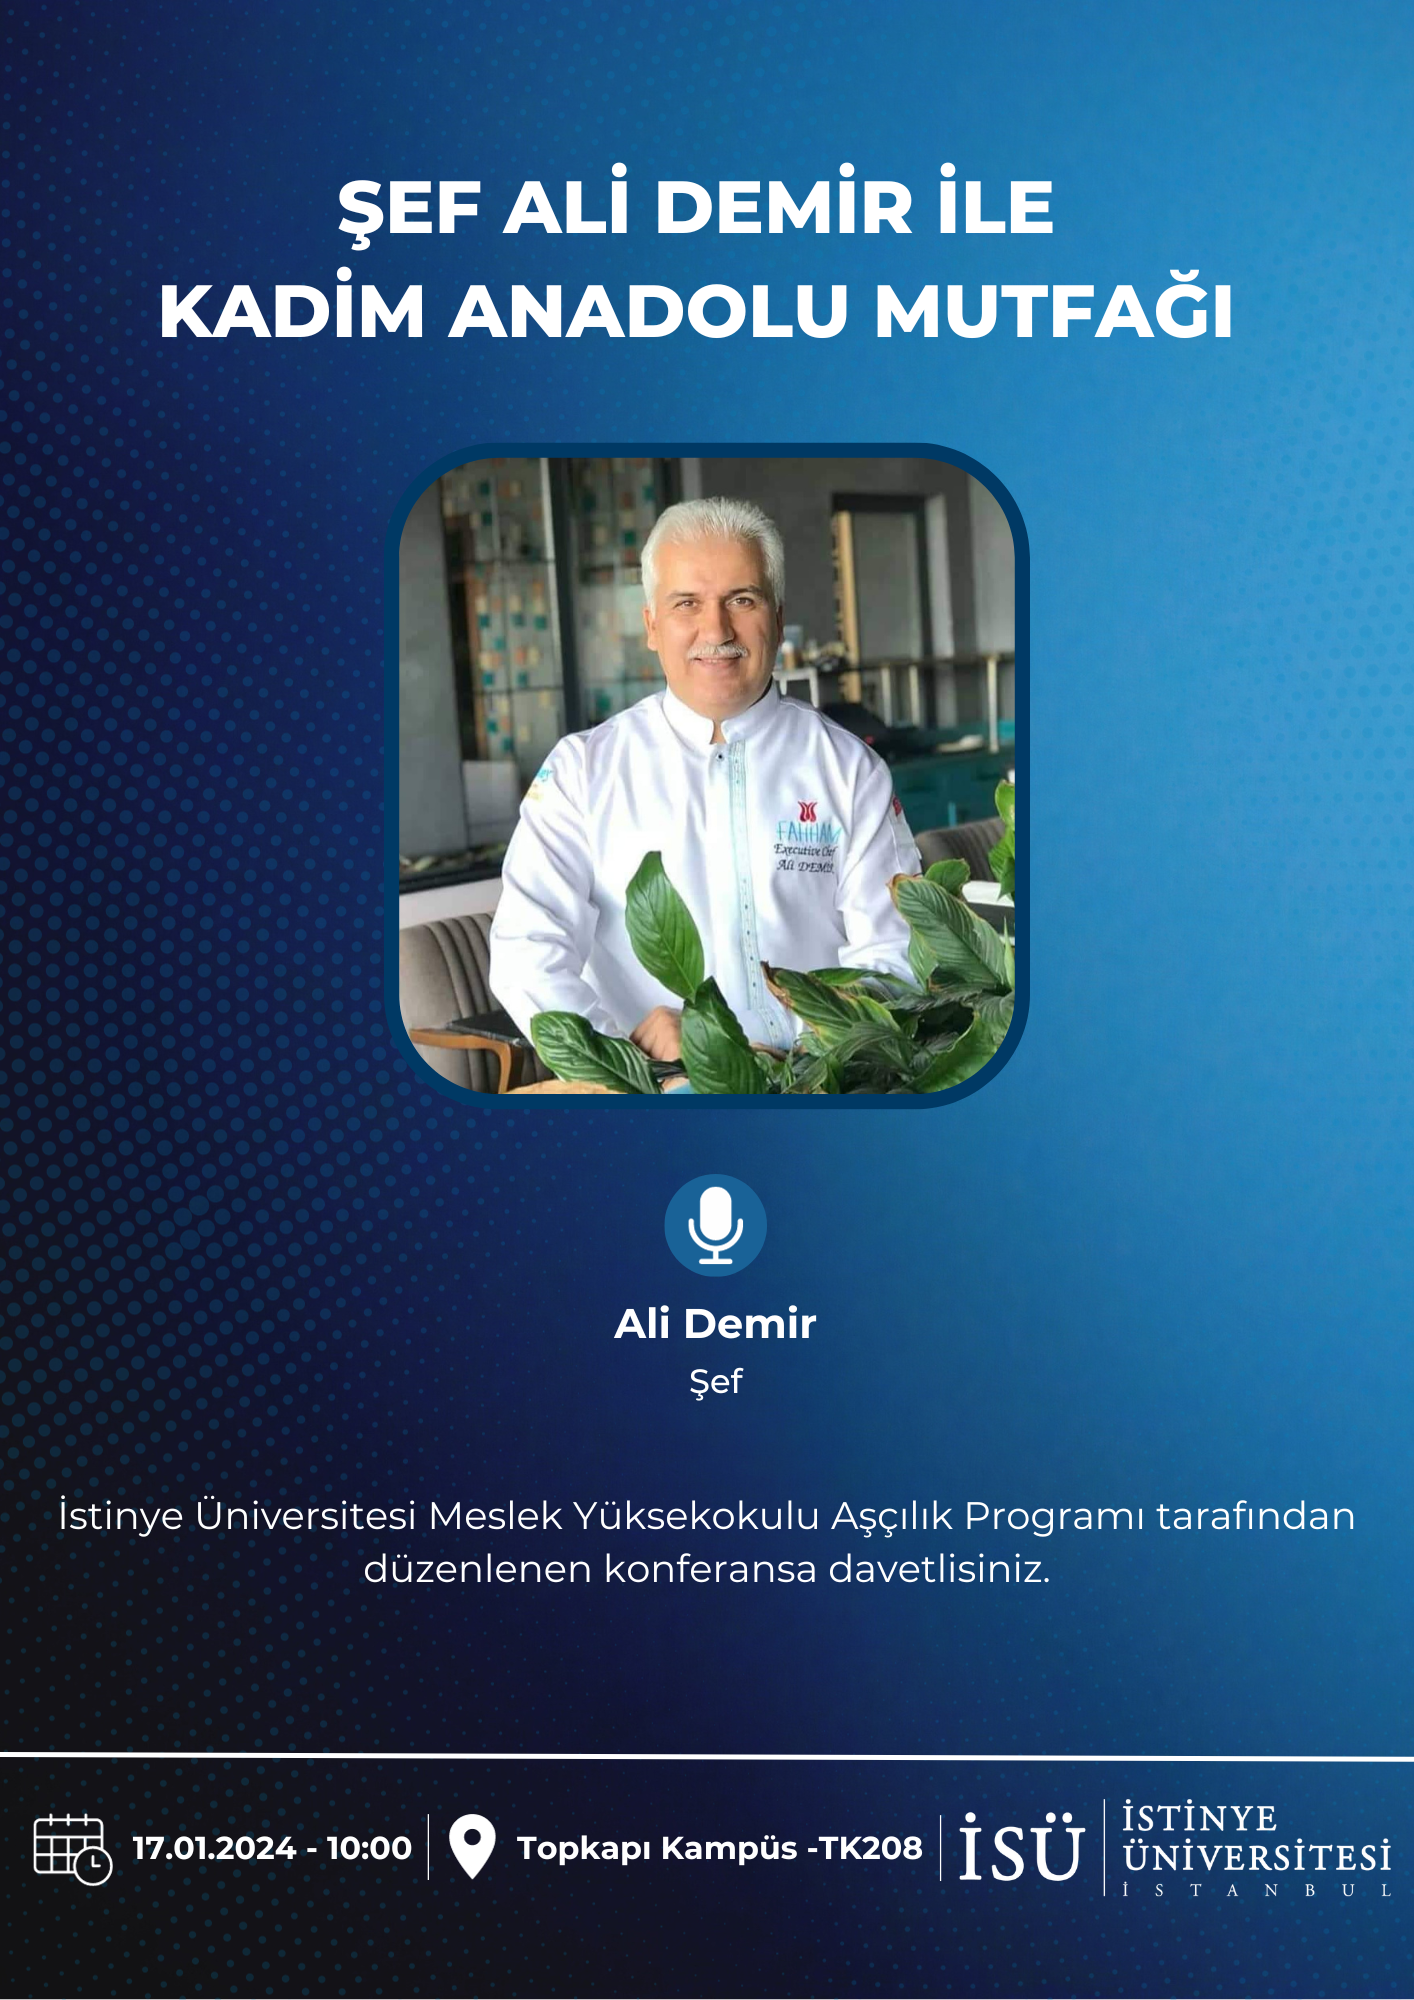 Şef Ali Demir ile Kadim Anadolu Mutfağı